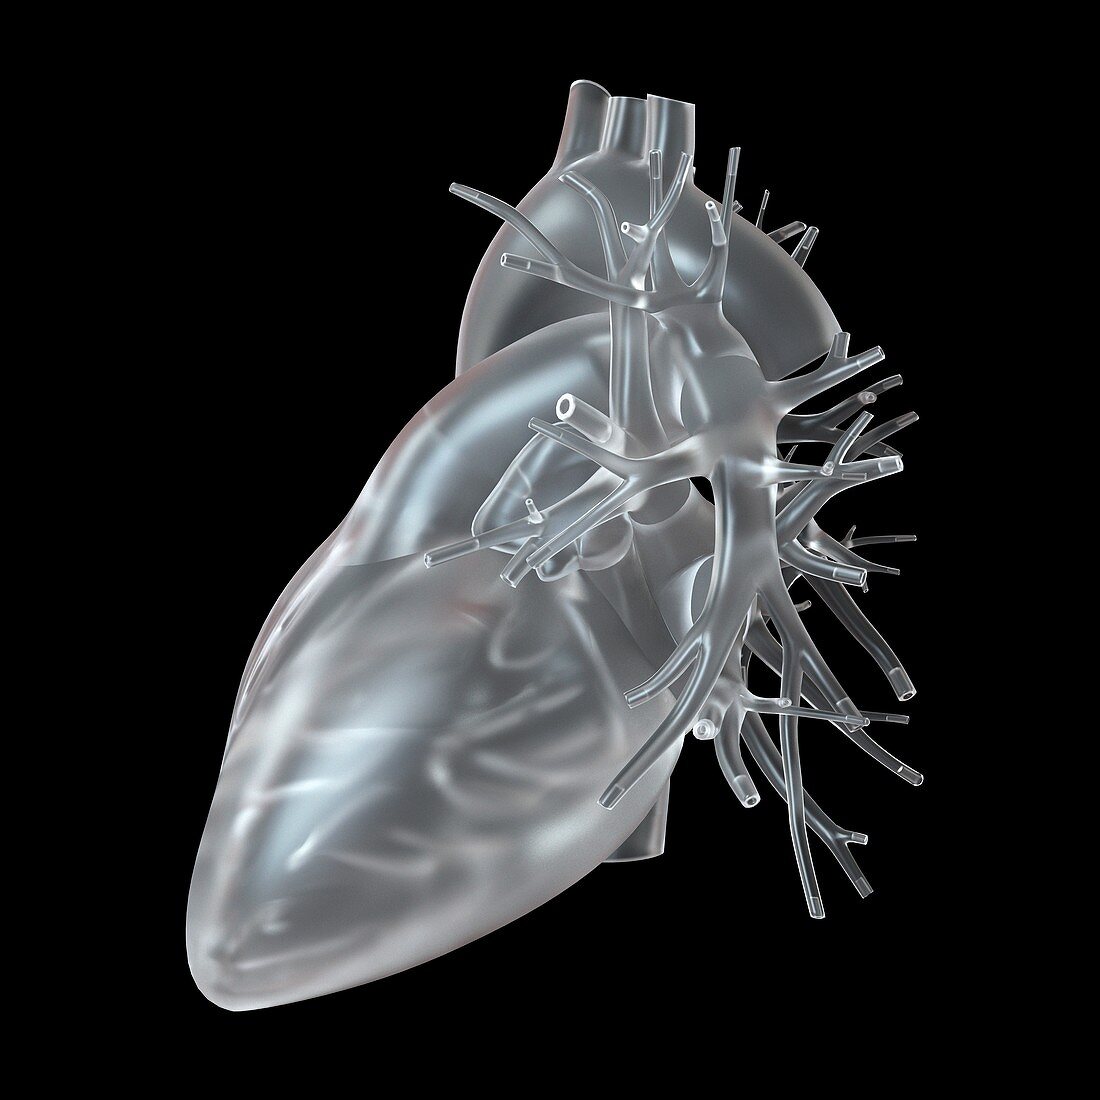 Illustration of glass heart